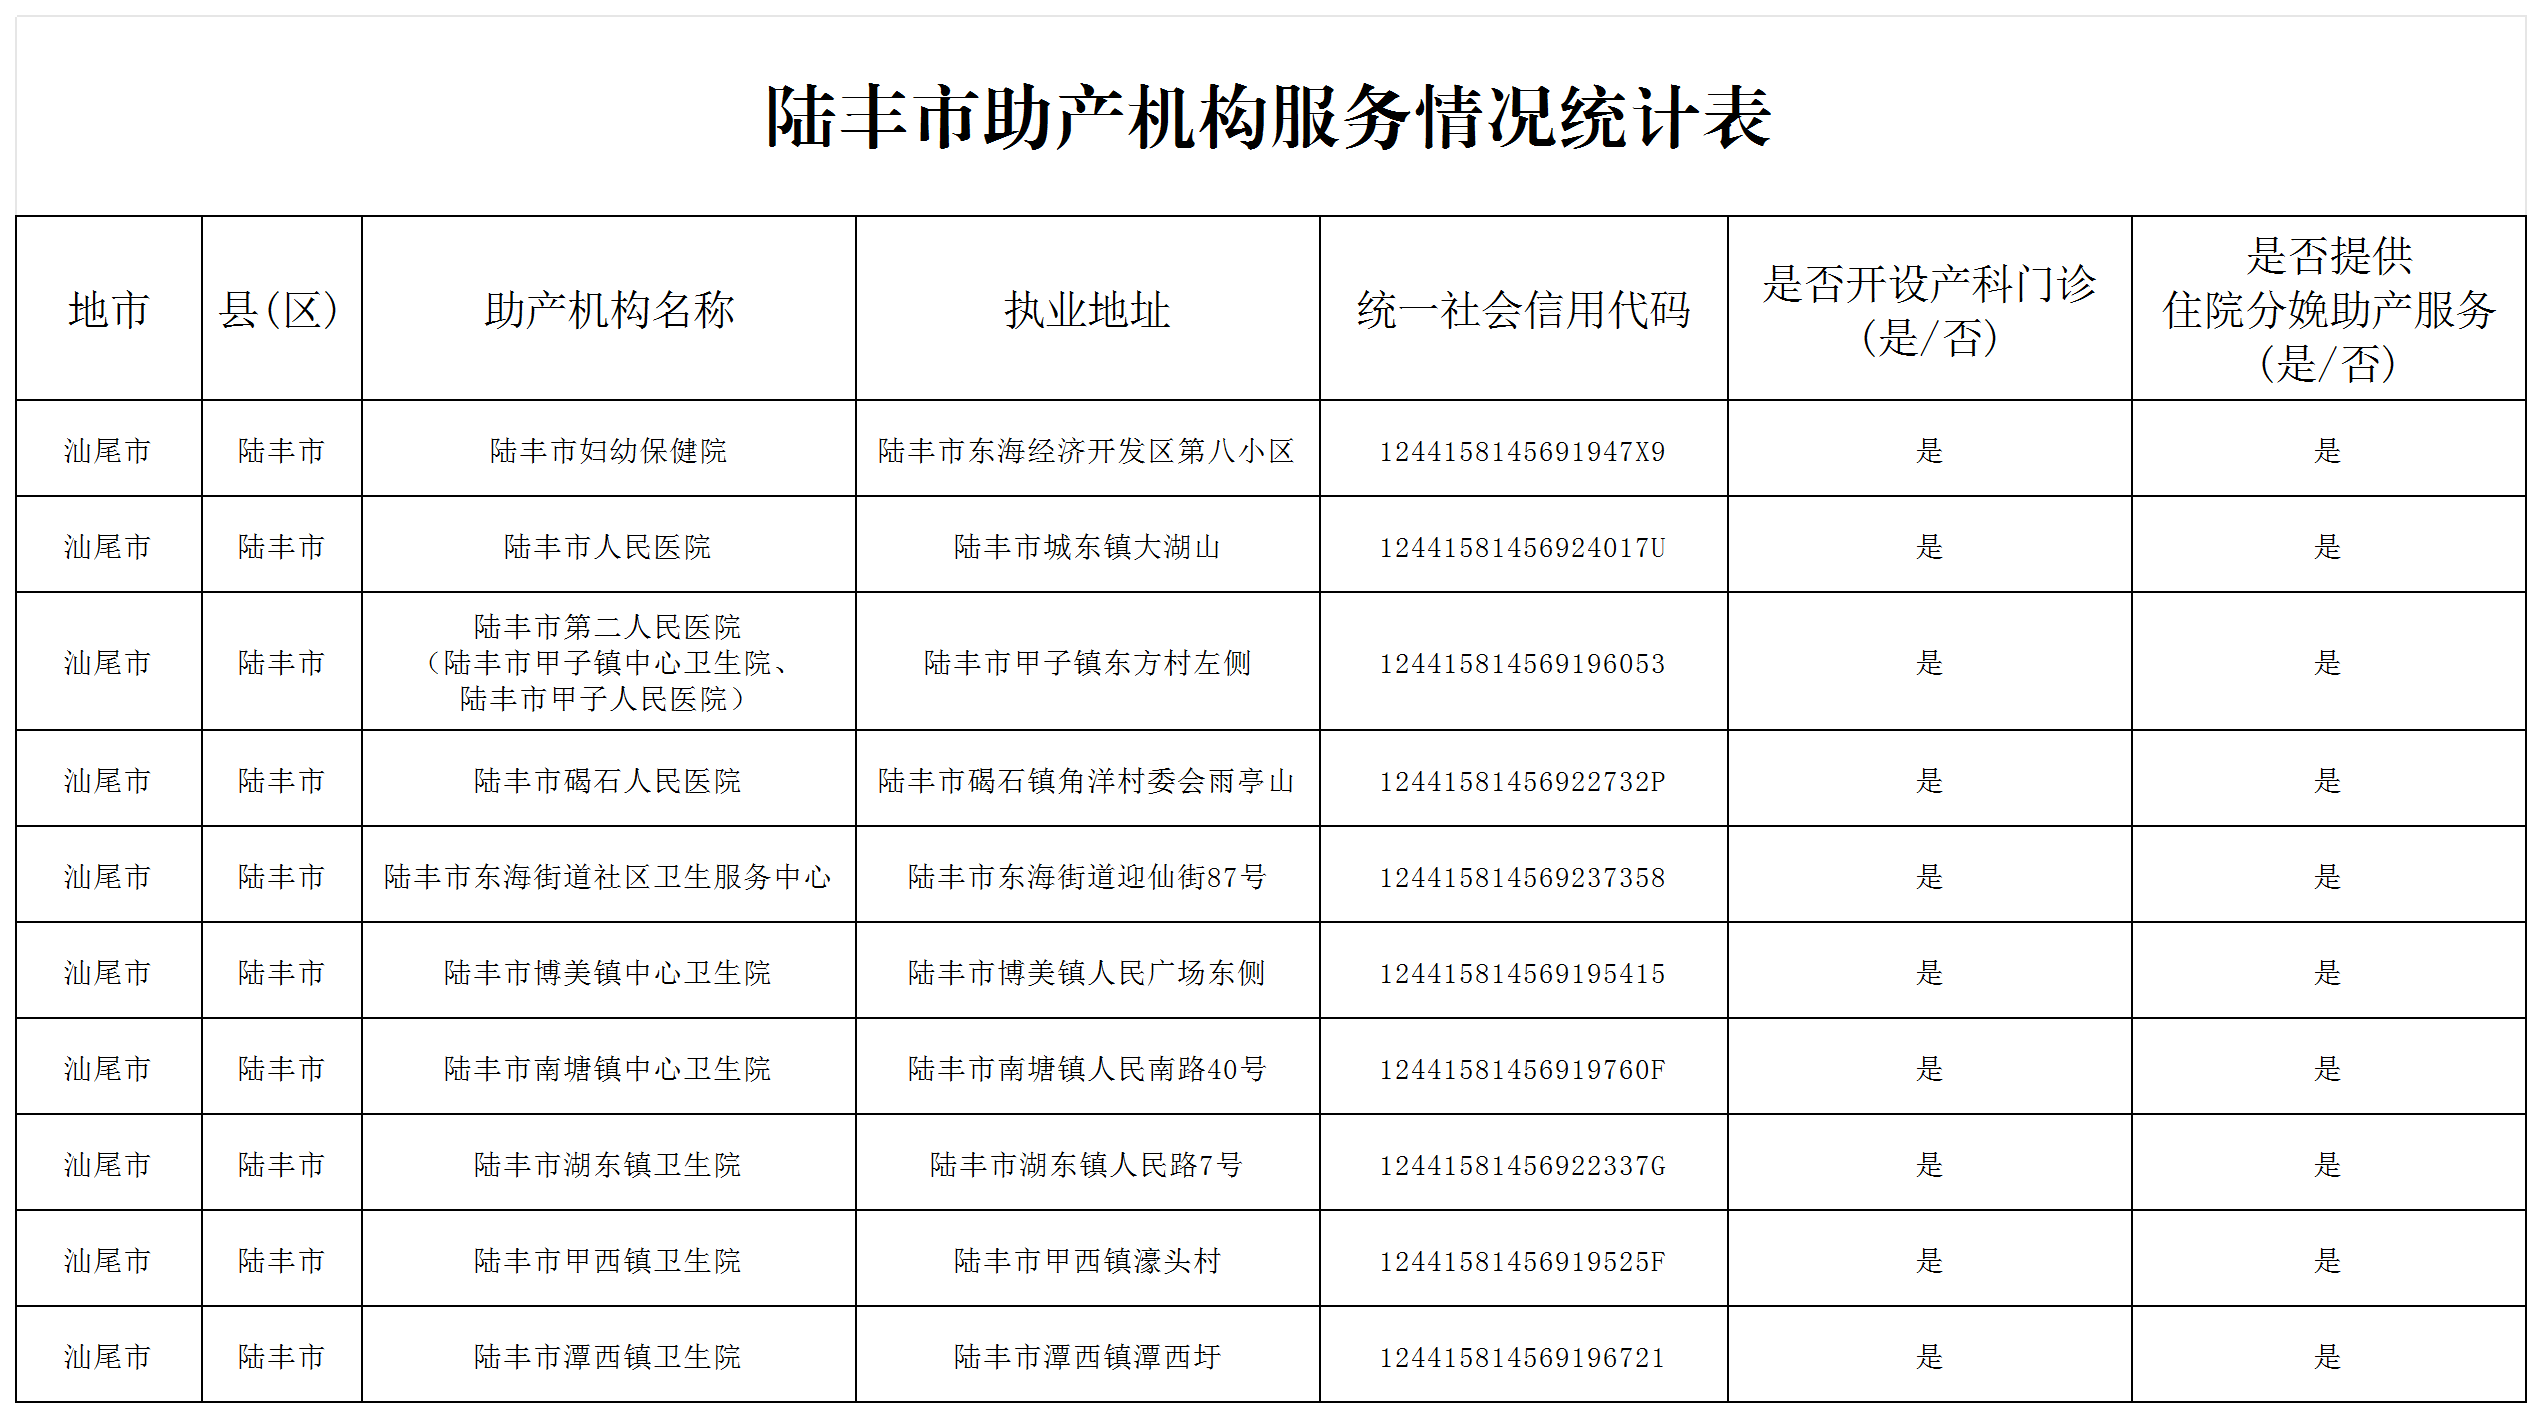 陆丰市助产机构服务情况统计表.png